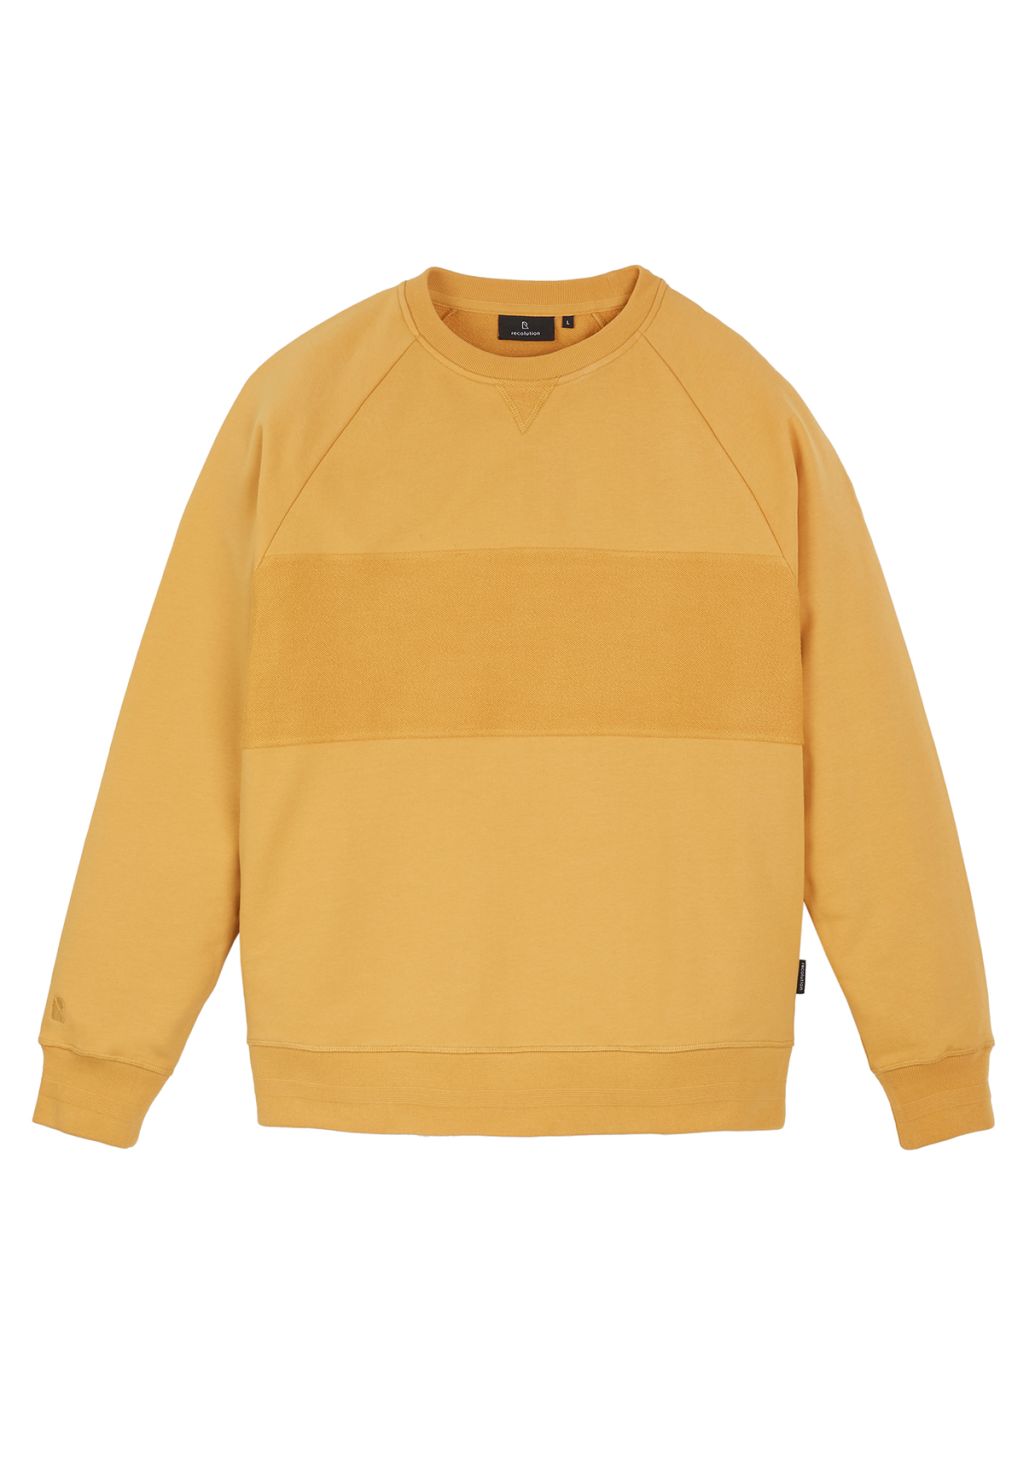 Männer Sweatshirt CHERVIL corn yellow L